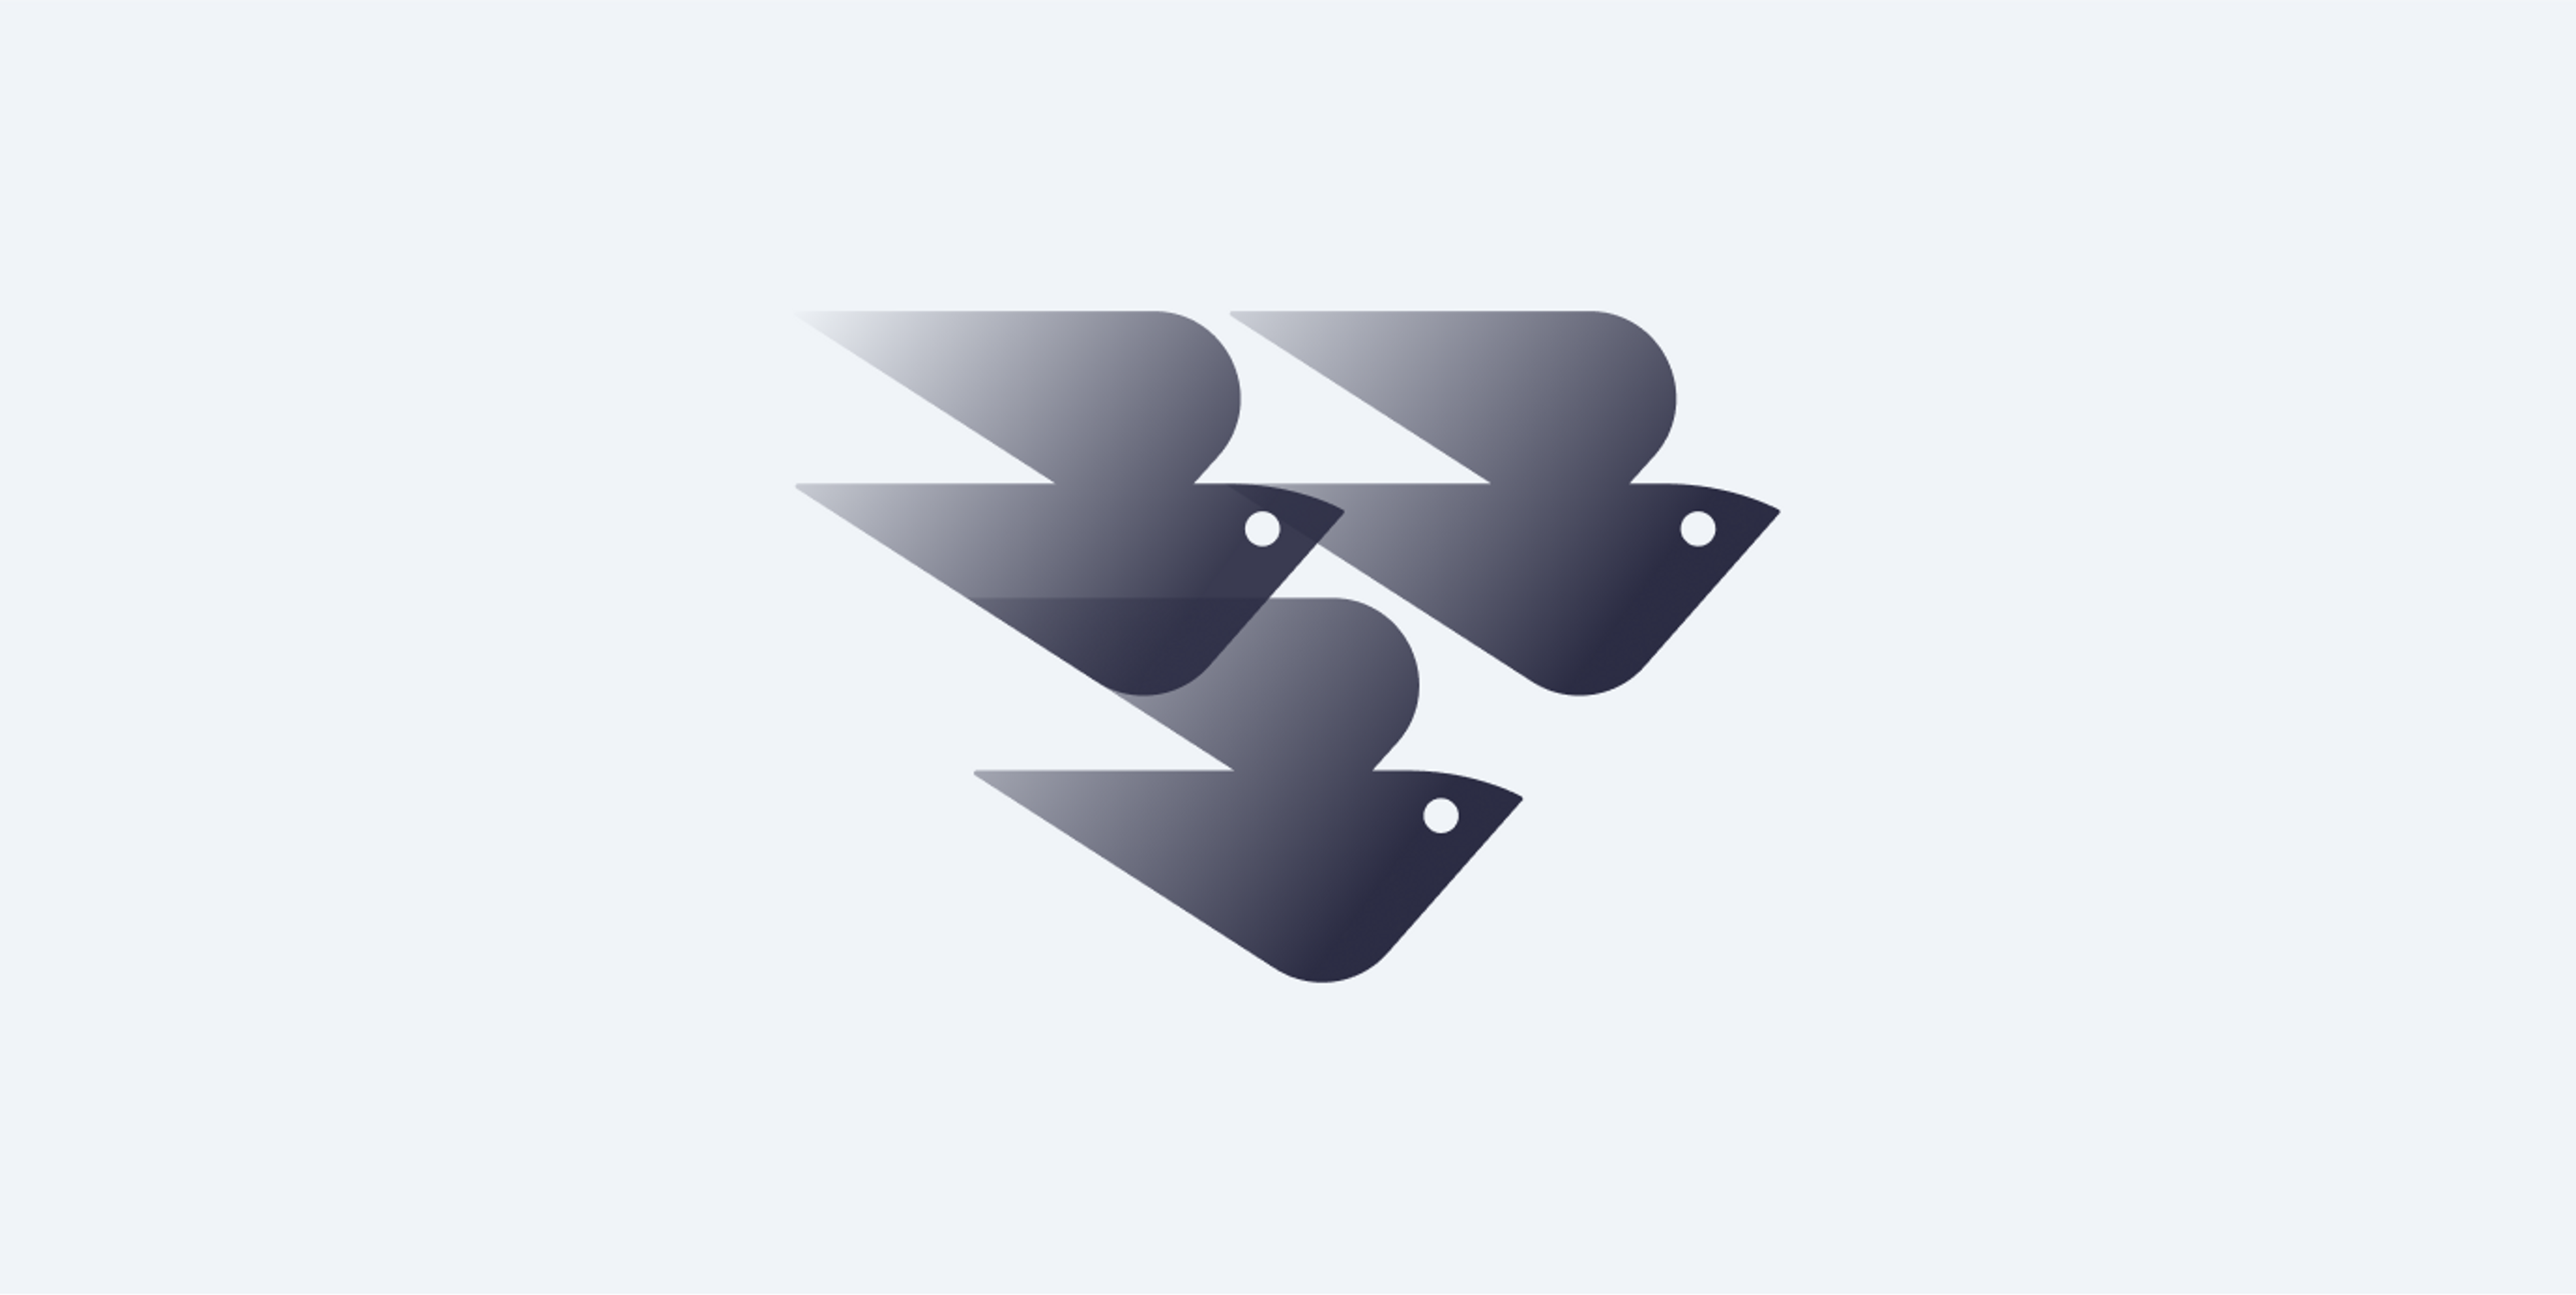 شعار سورا يونيون مصنوع من أشكال مجرّدة لثلاثة طيور متداخلة مع بعضها البعض